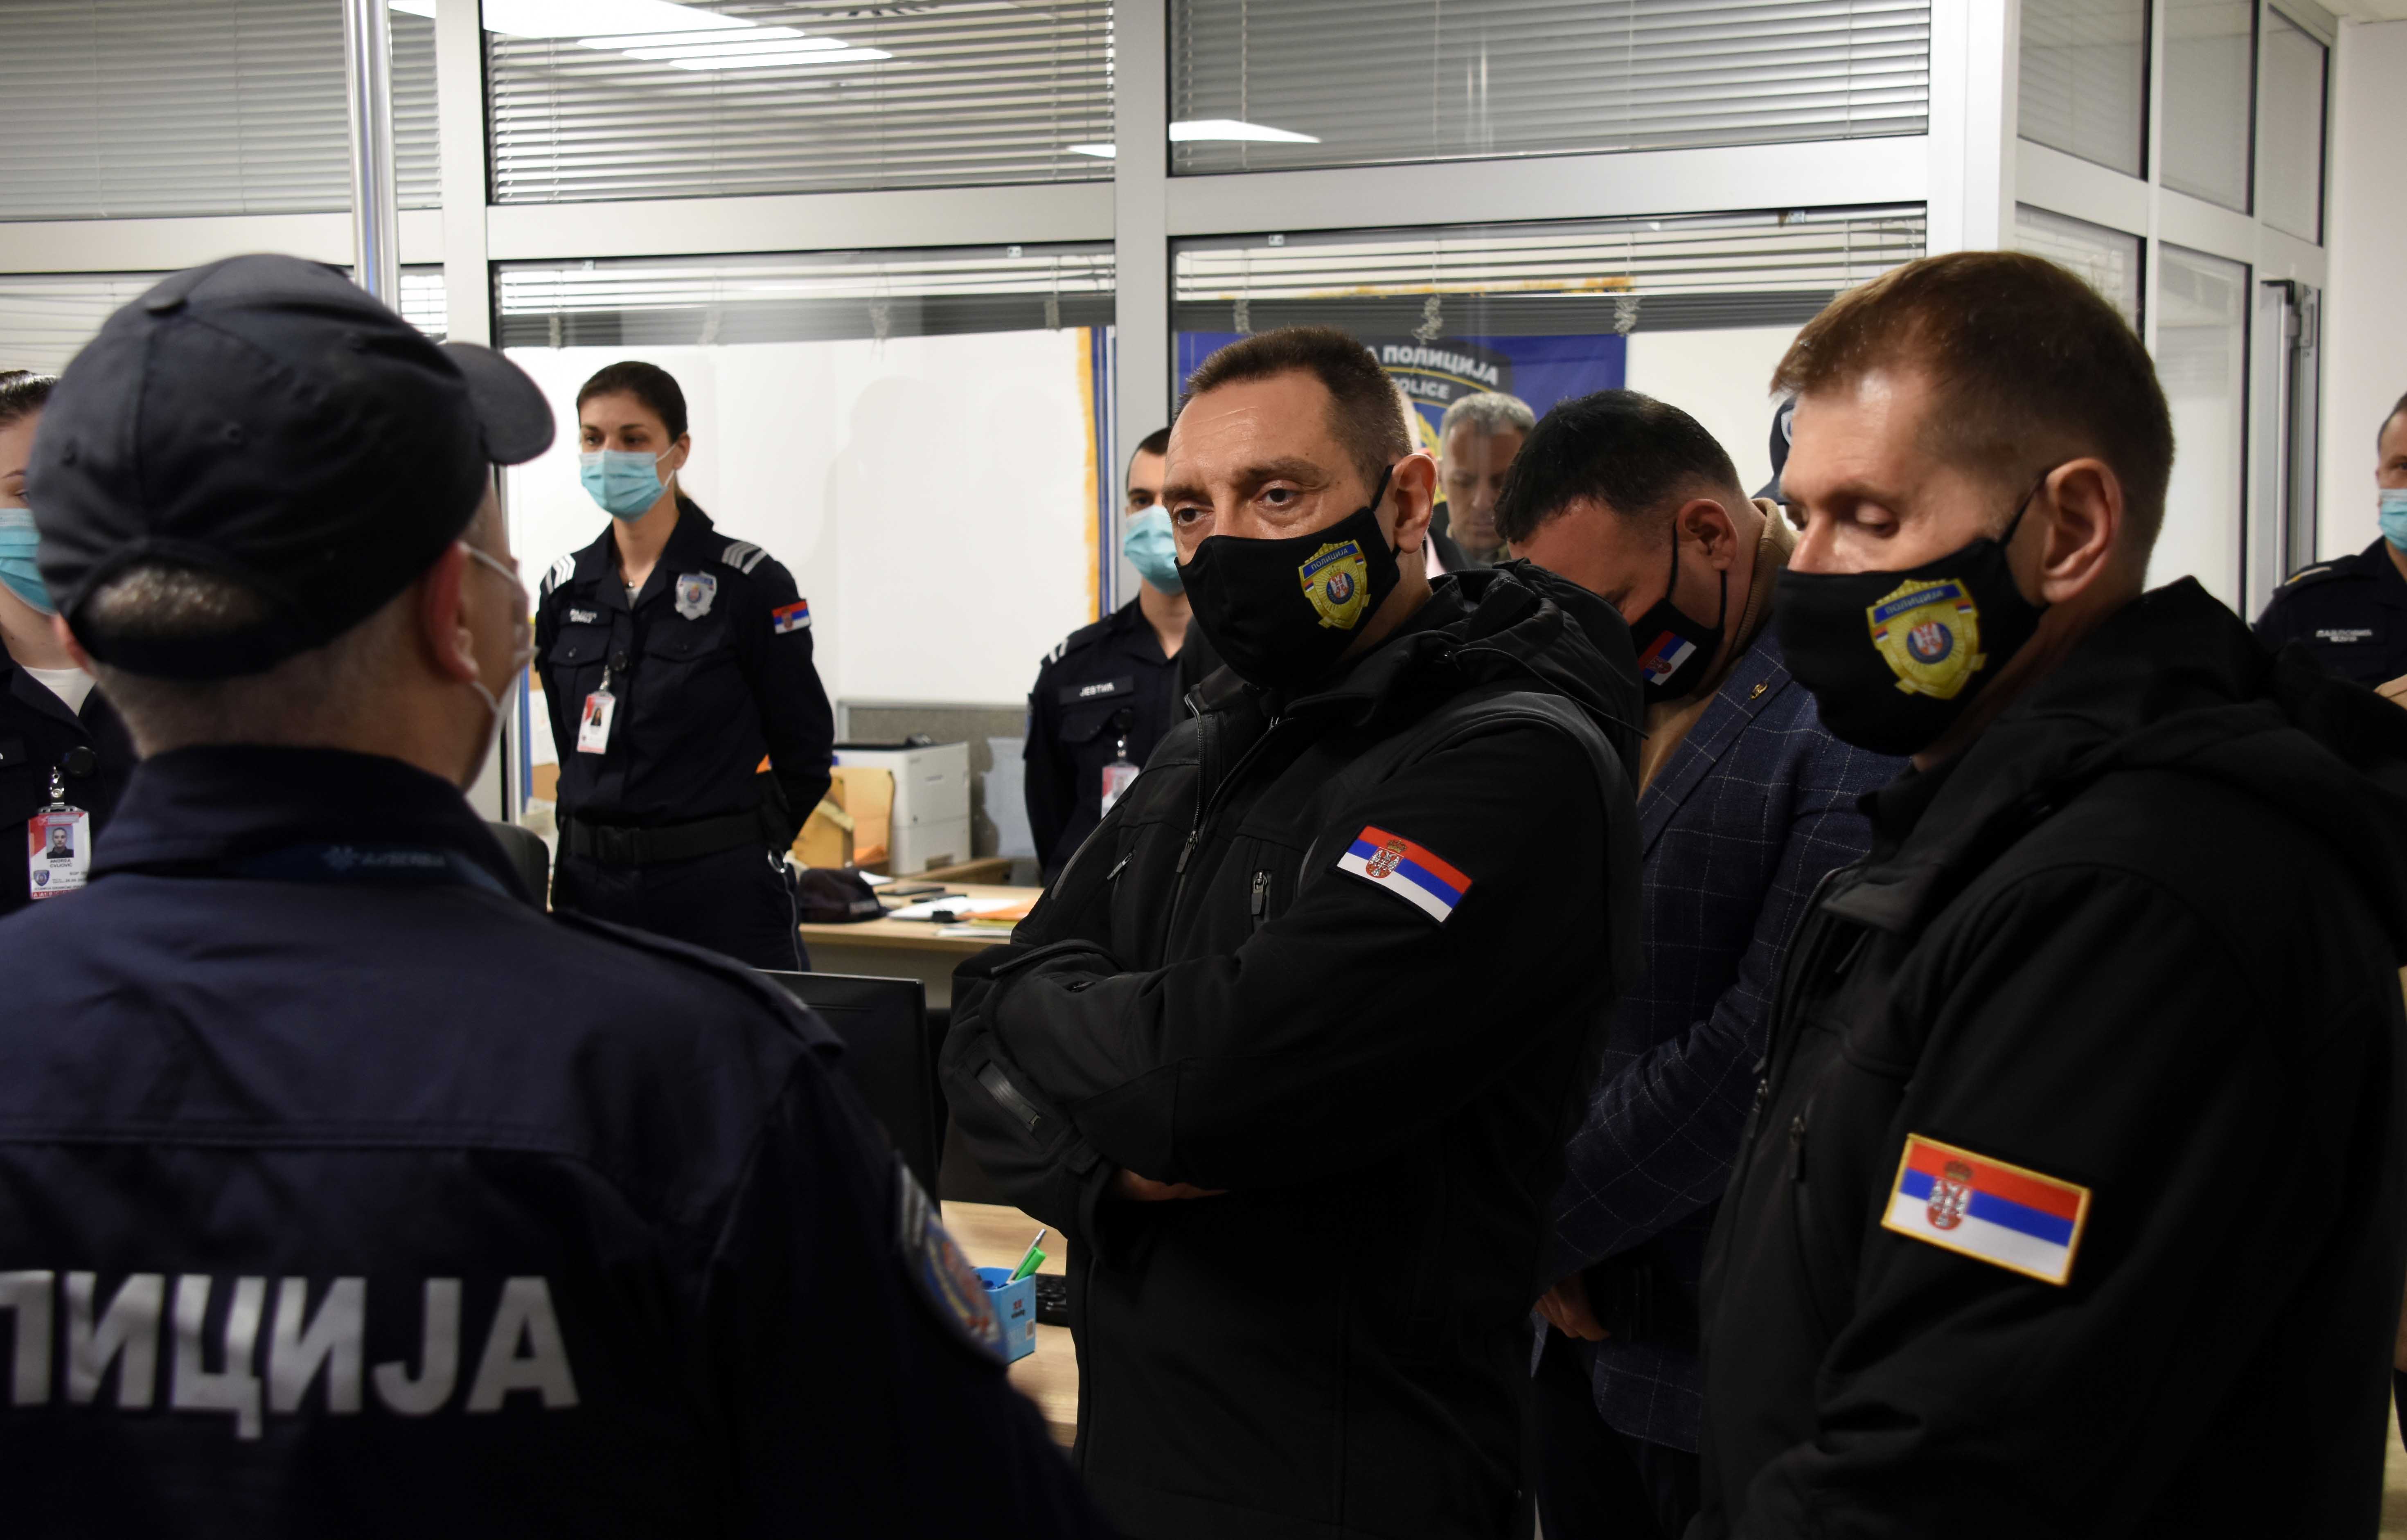 Stanica granične policije Beograd među 10 najbolјih u Evropi  u otkrivanju falsifikovanih dokumenata